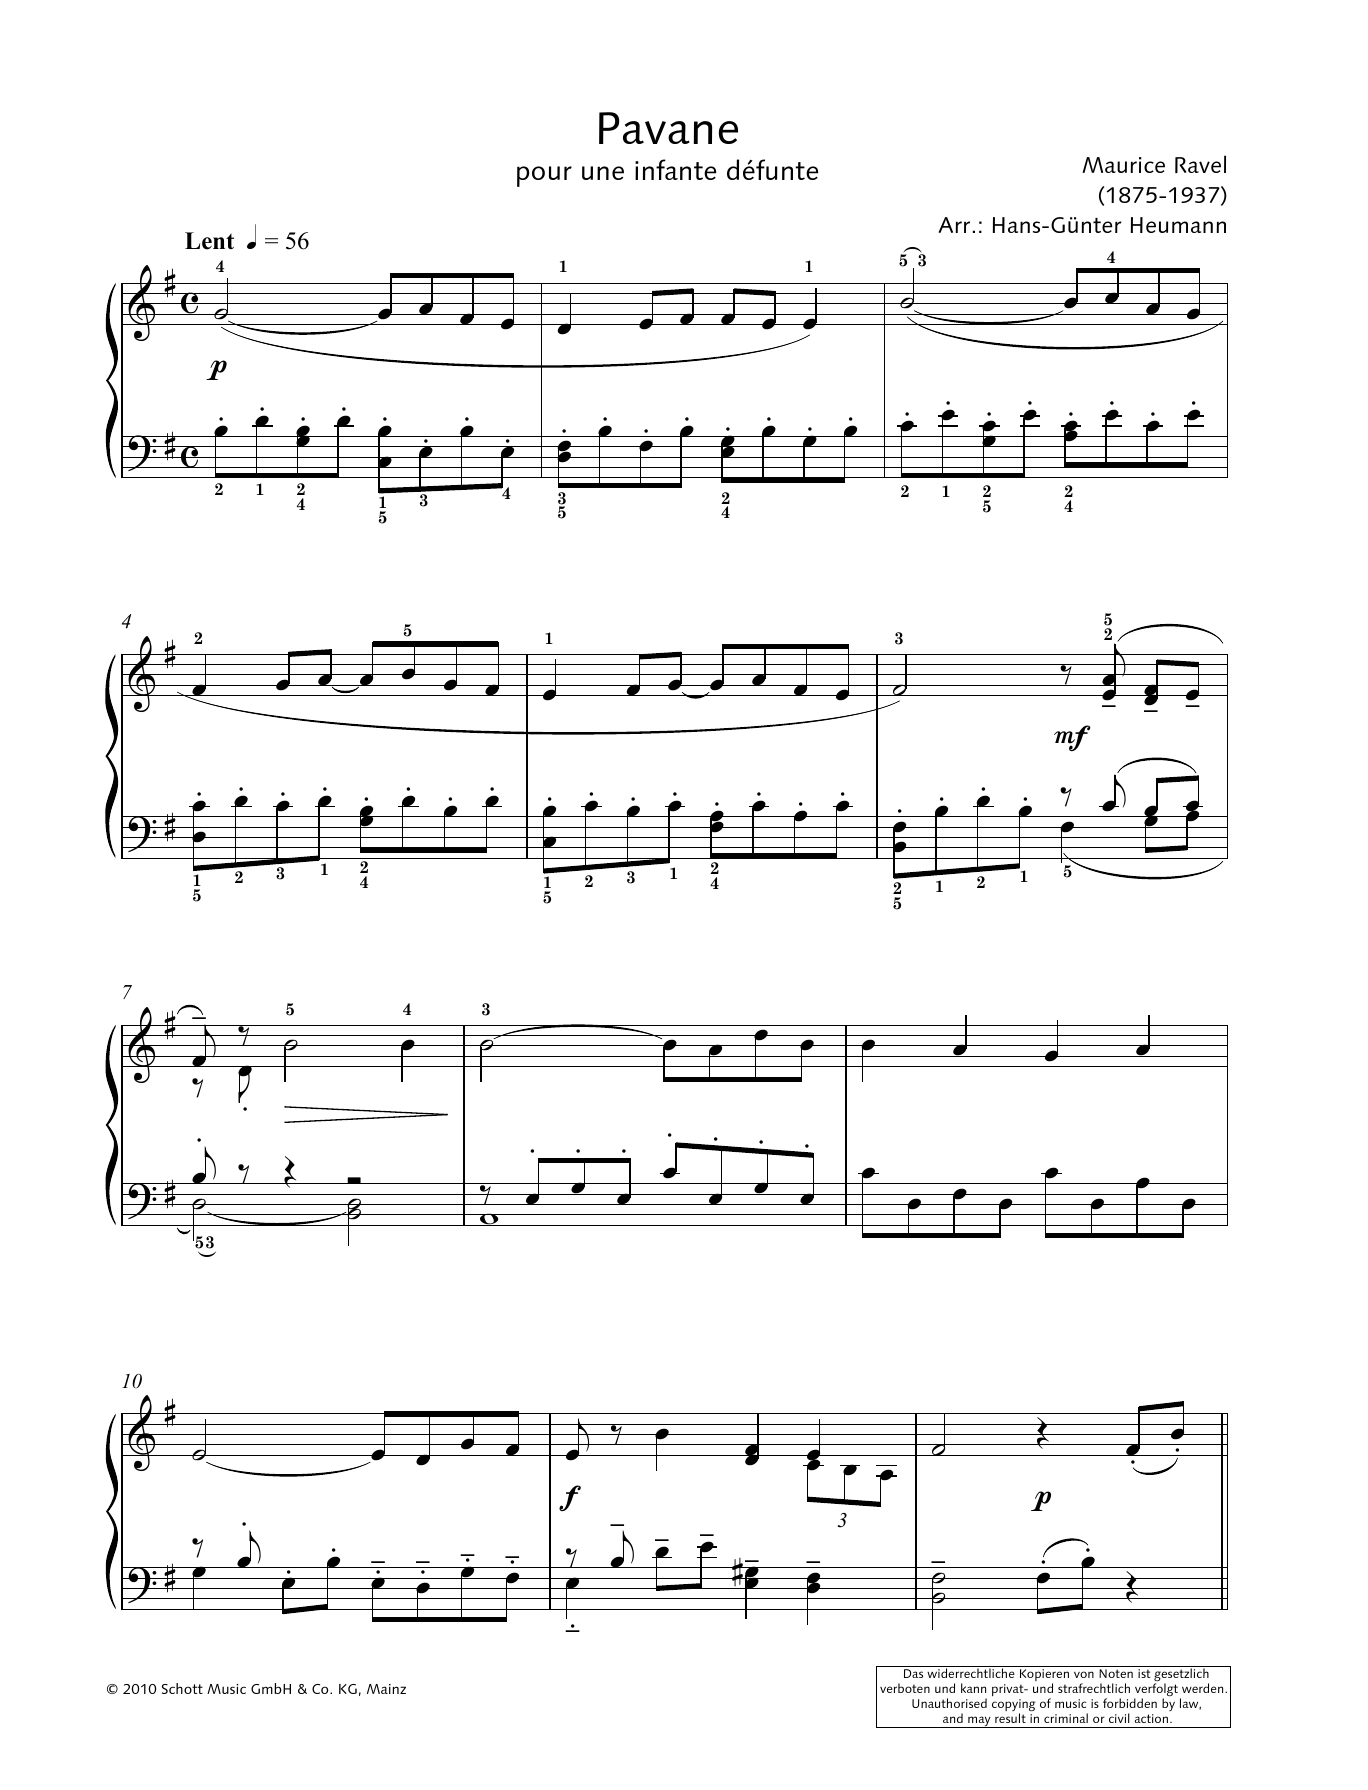 Hans-Gunter Heumann Pavane pour une Infante Défunte Sheet Music Notes & Chords for Piano Solo - Download or Print PDF